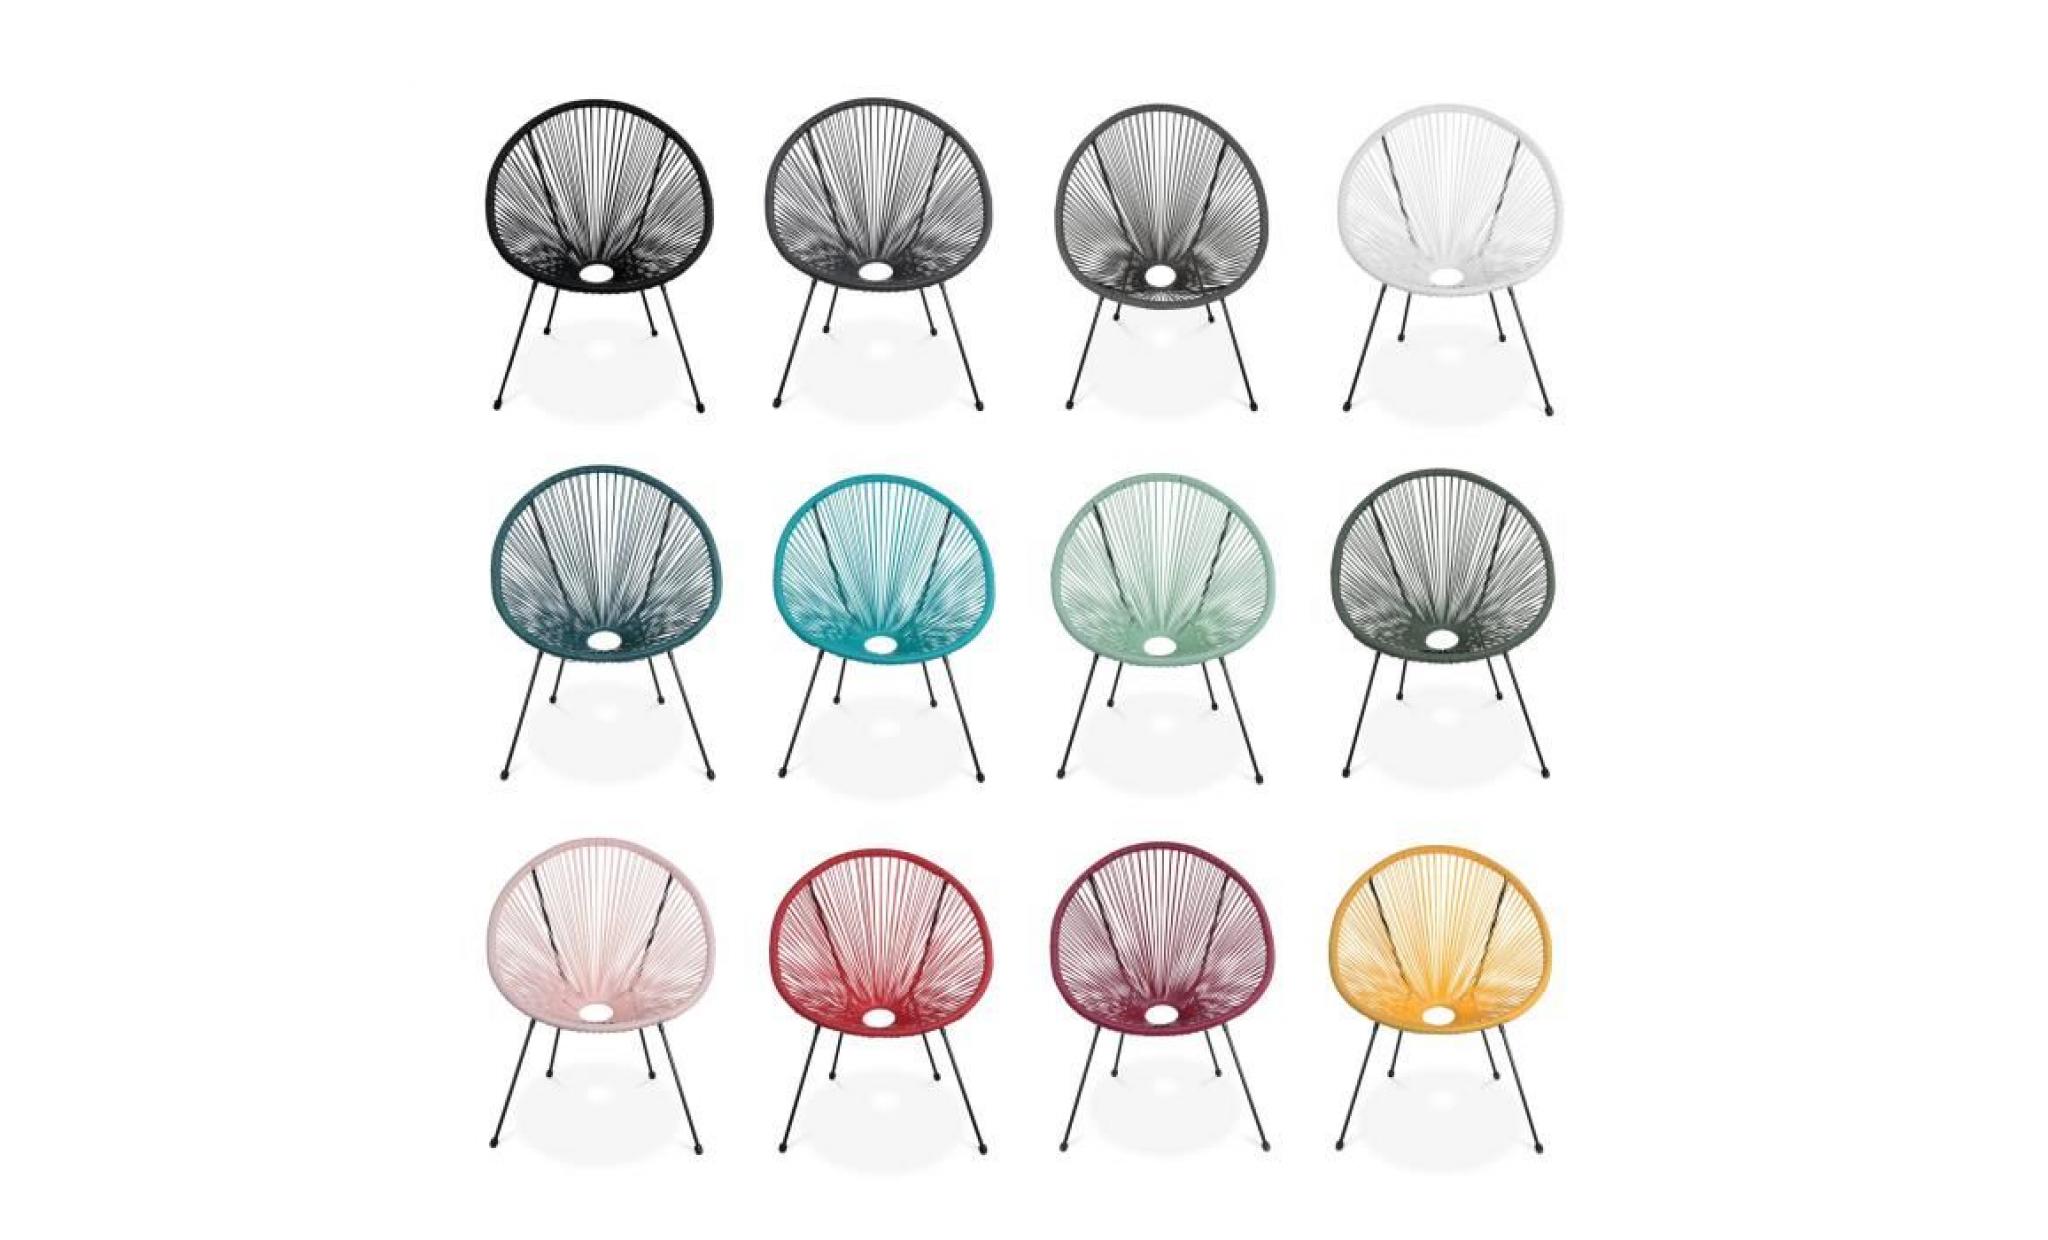 lot de 2 fauteuils design oeuf   acapulco bordeaux   fauteuils 4 pieds design rétro, cordage plastique, intérieur / extérieur pas cher